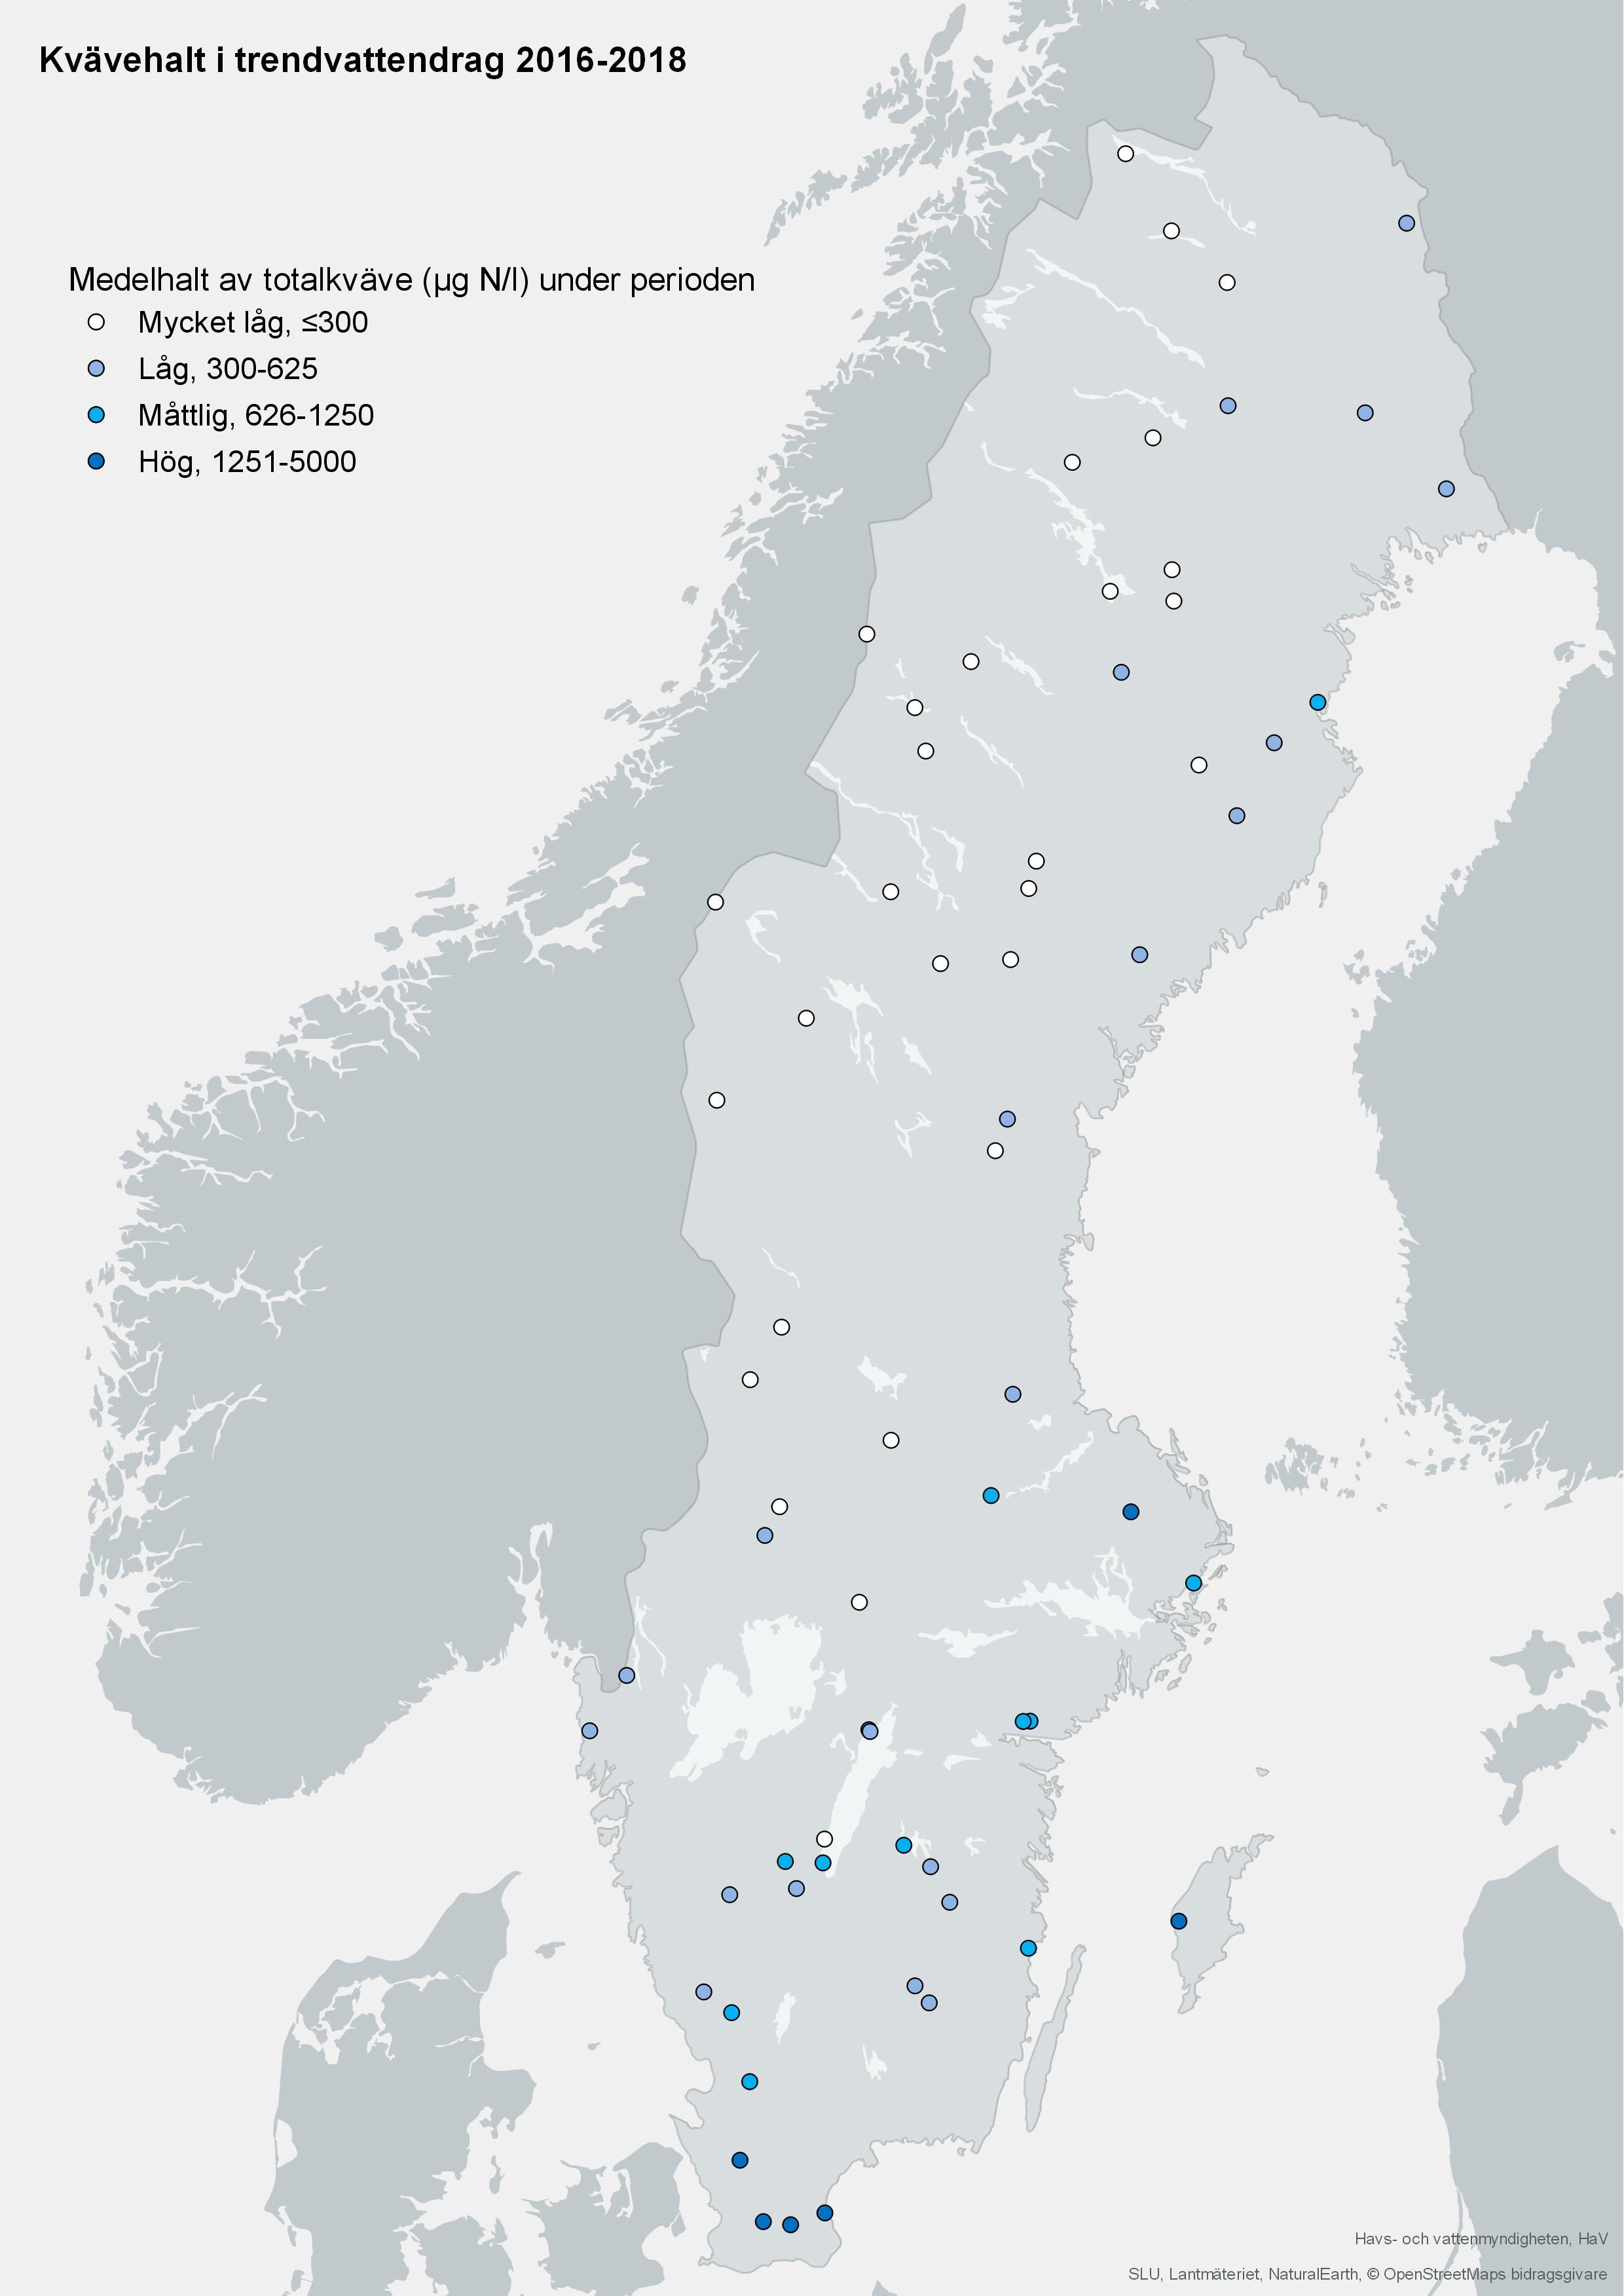 Medelhalt av totalkväve i trendvattendrag 2016-2018. Karta, illustration.